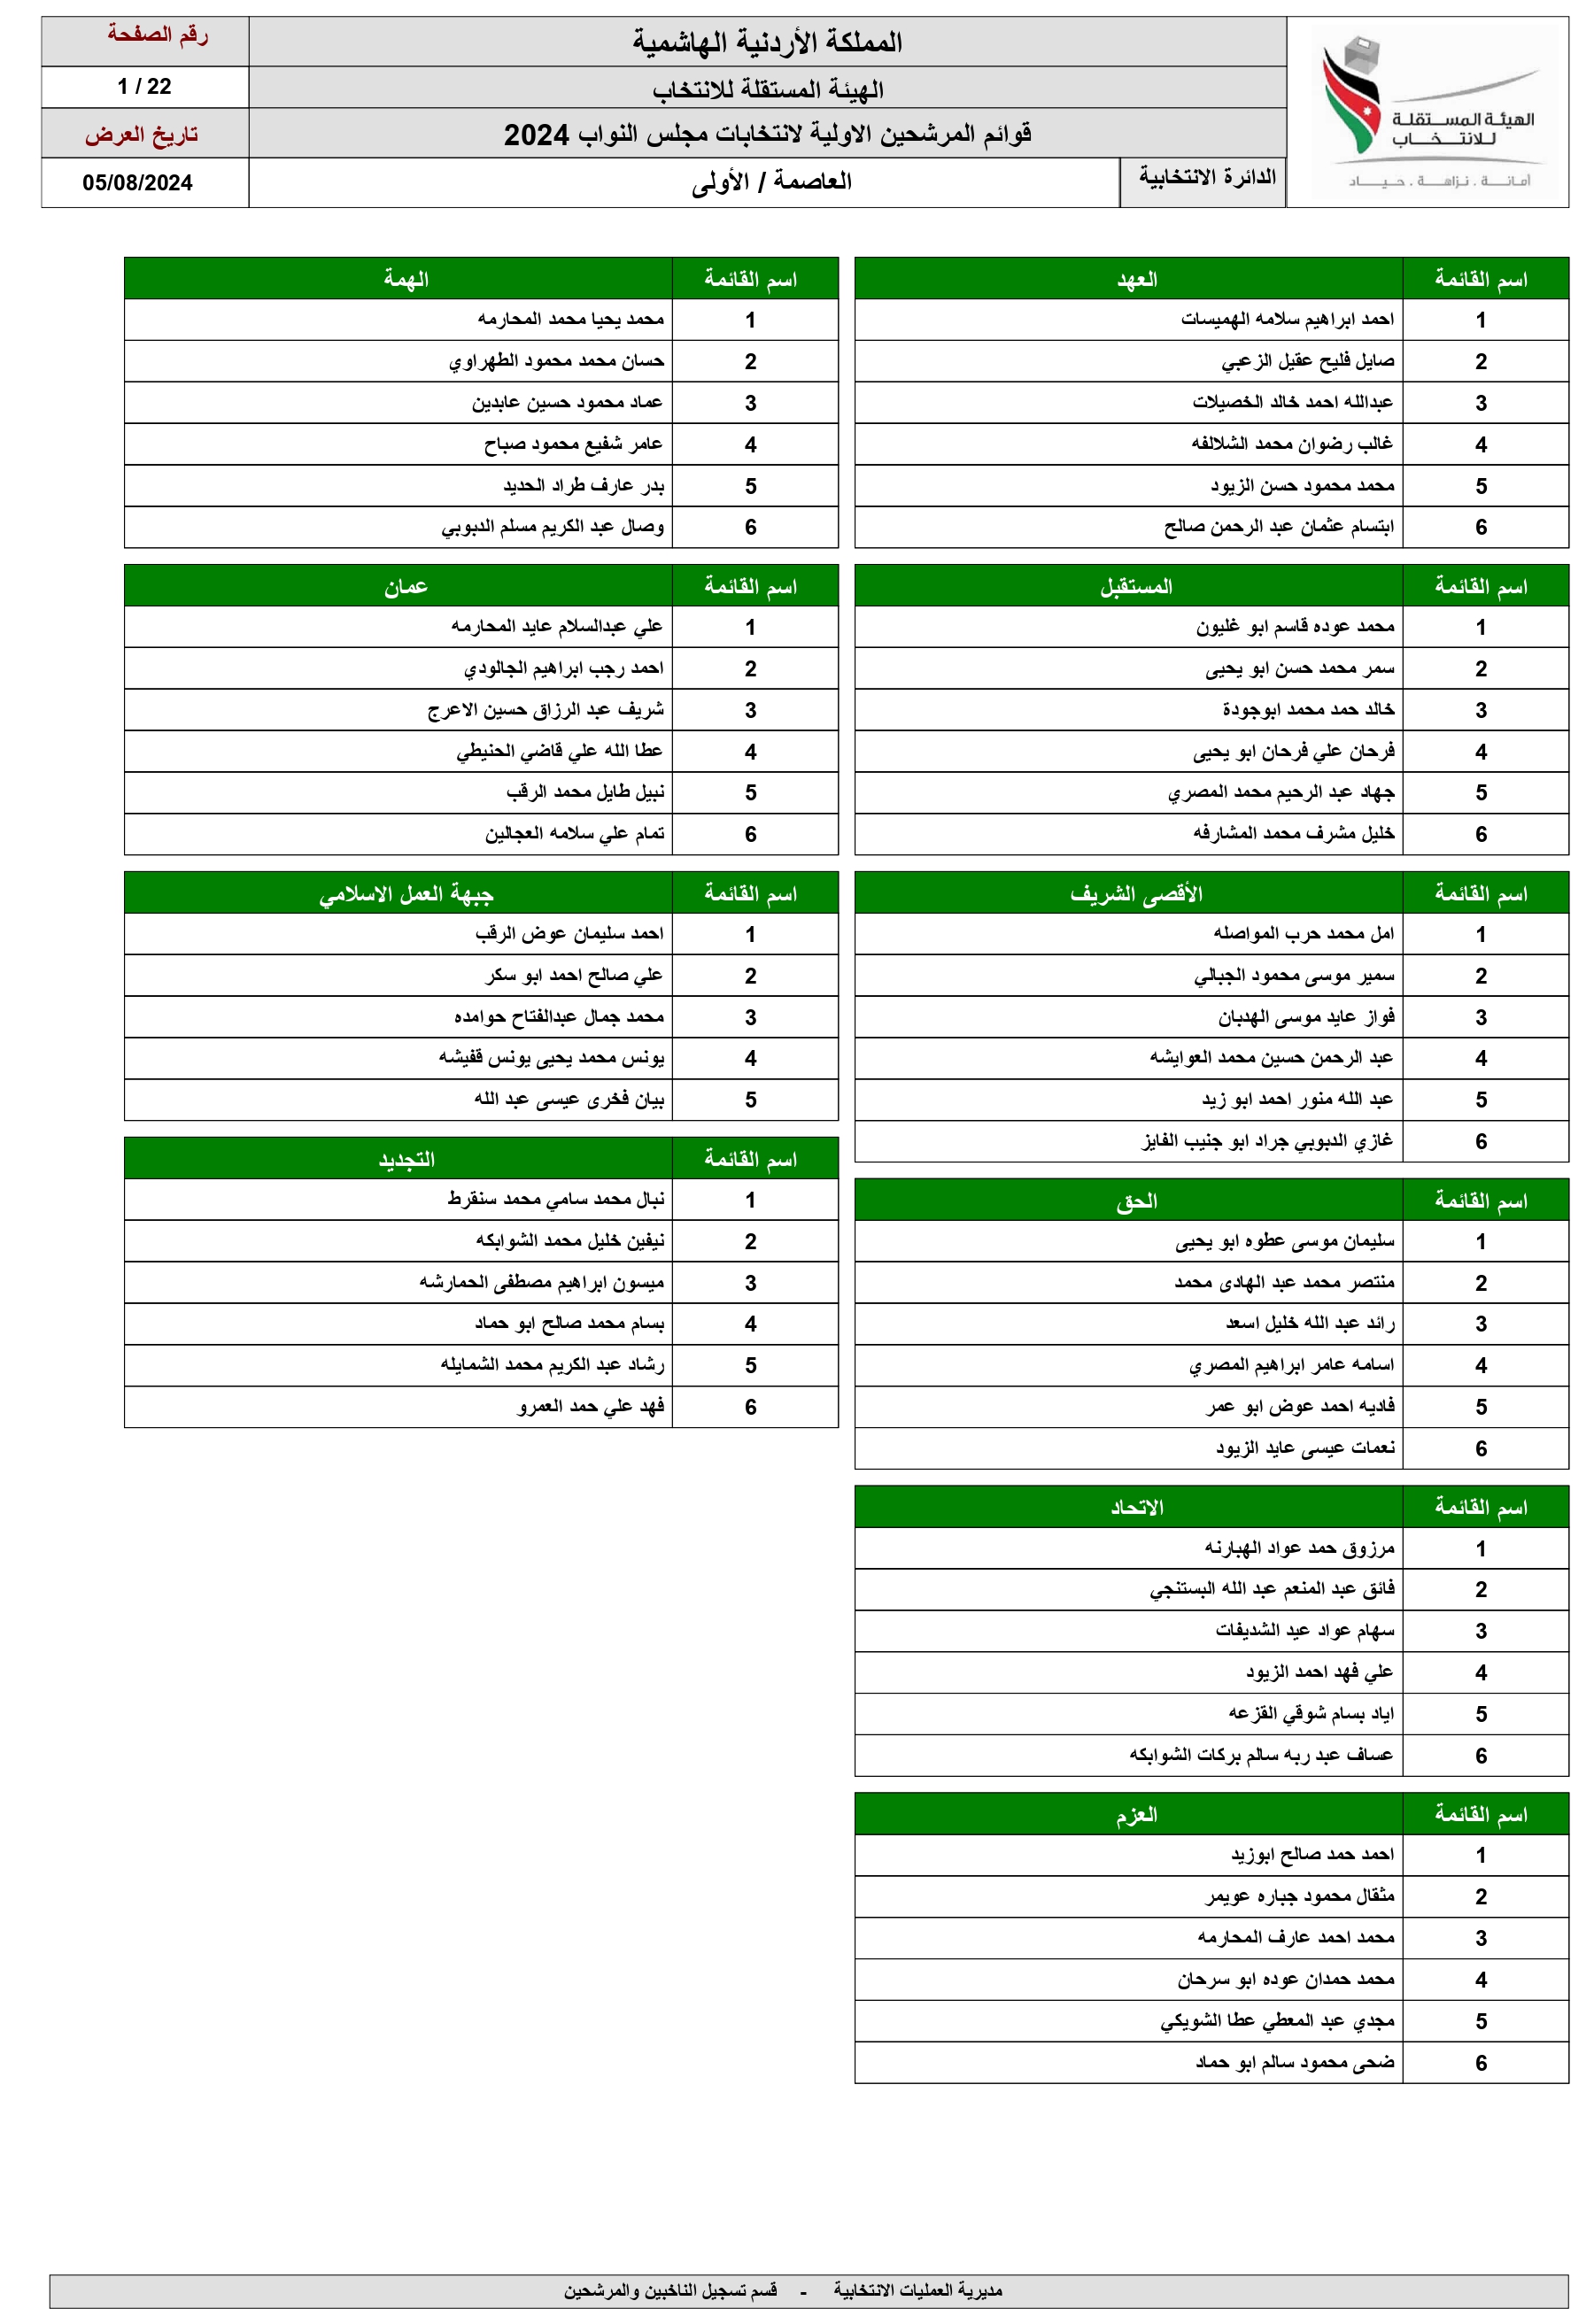 الاردن24 تنشر اسماء المرشحين للانتخابات النيابية ضمن القوائم المحلية والعامة 